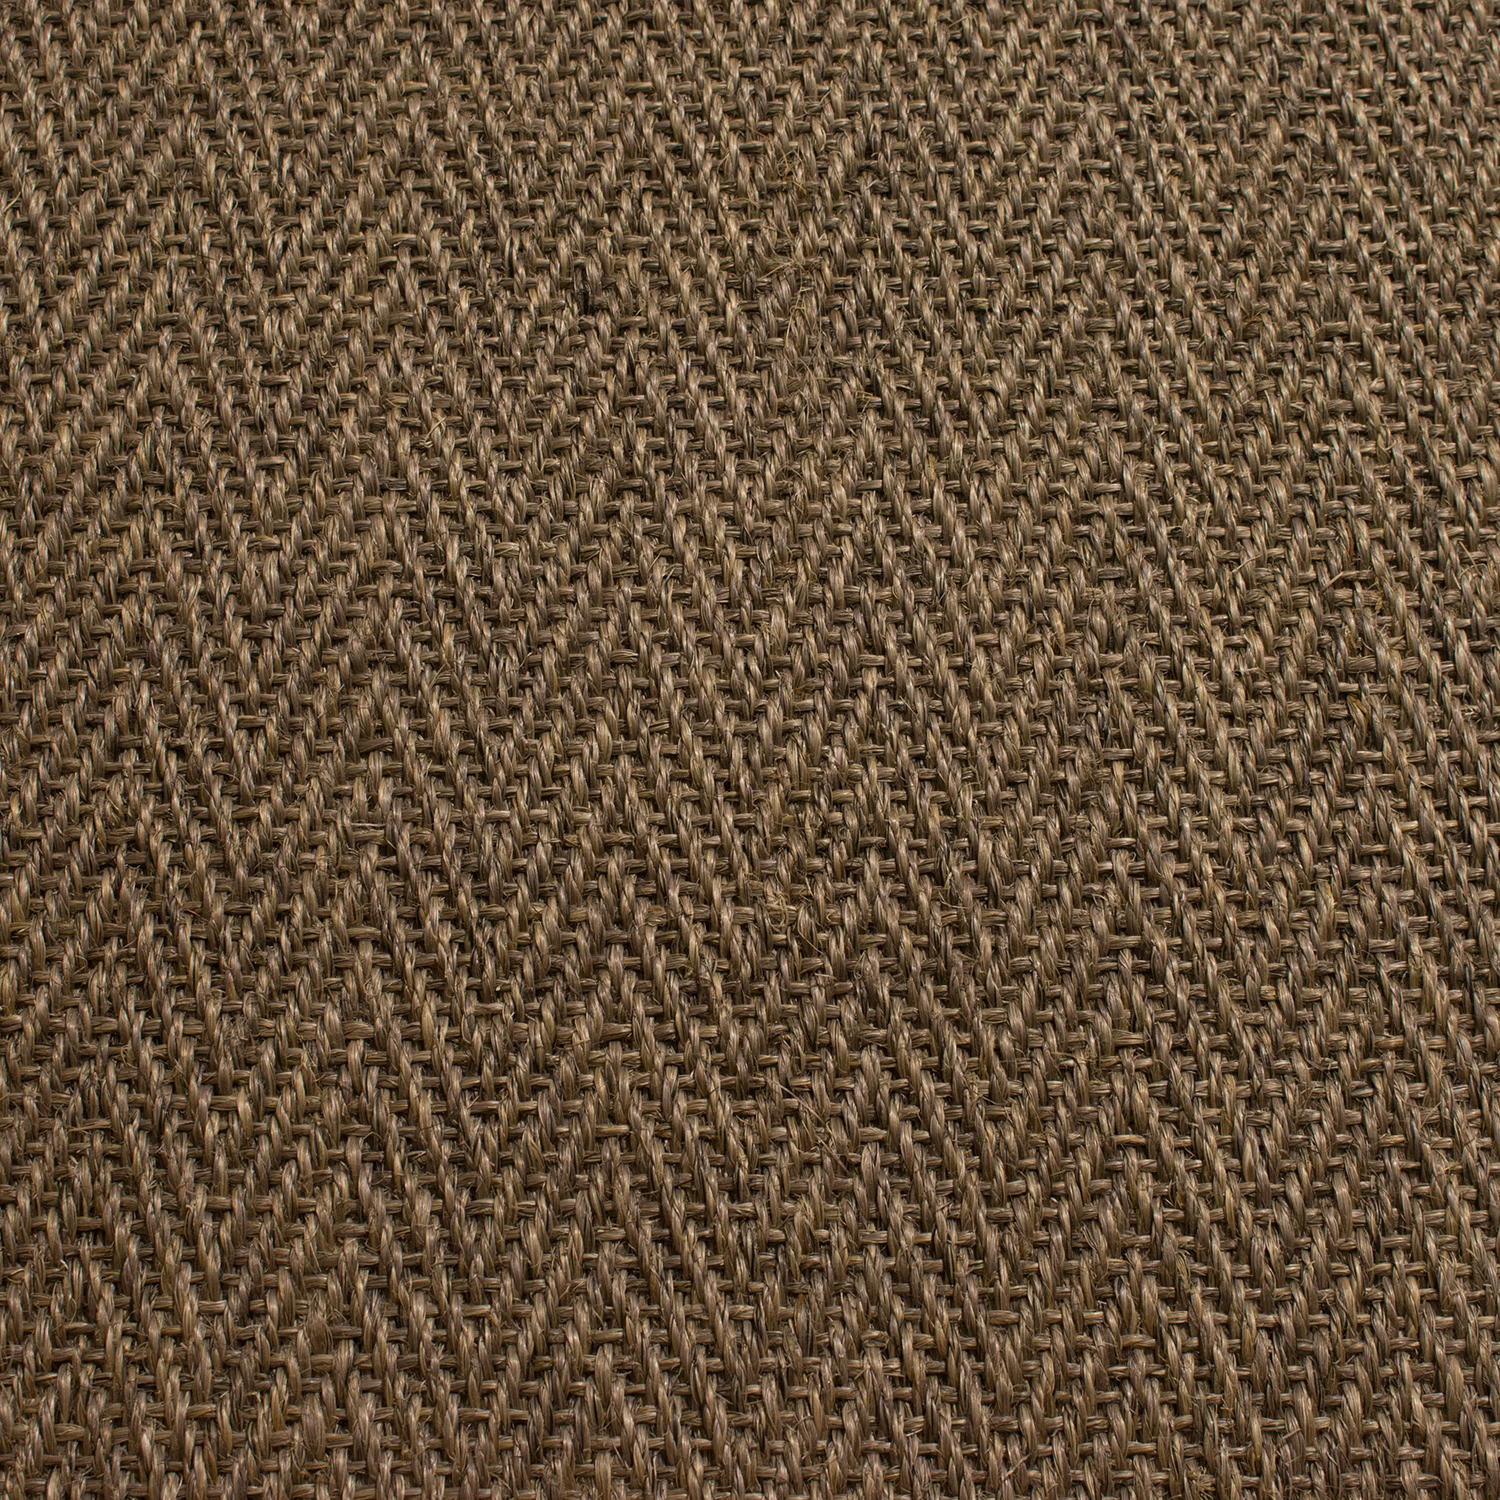 Pentle Herringbone Sisal Carpet, Wool Sisal Herringbone Rug